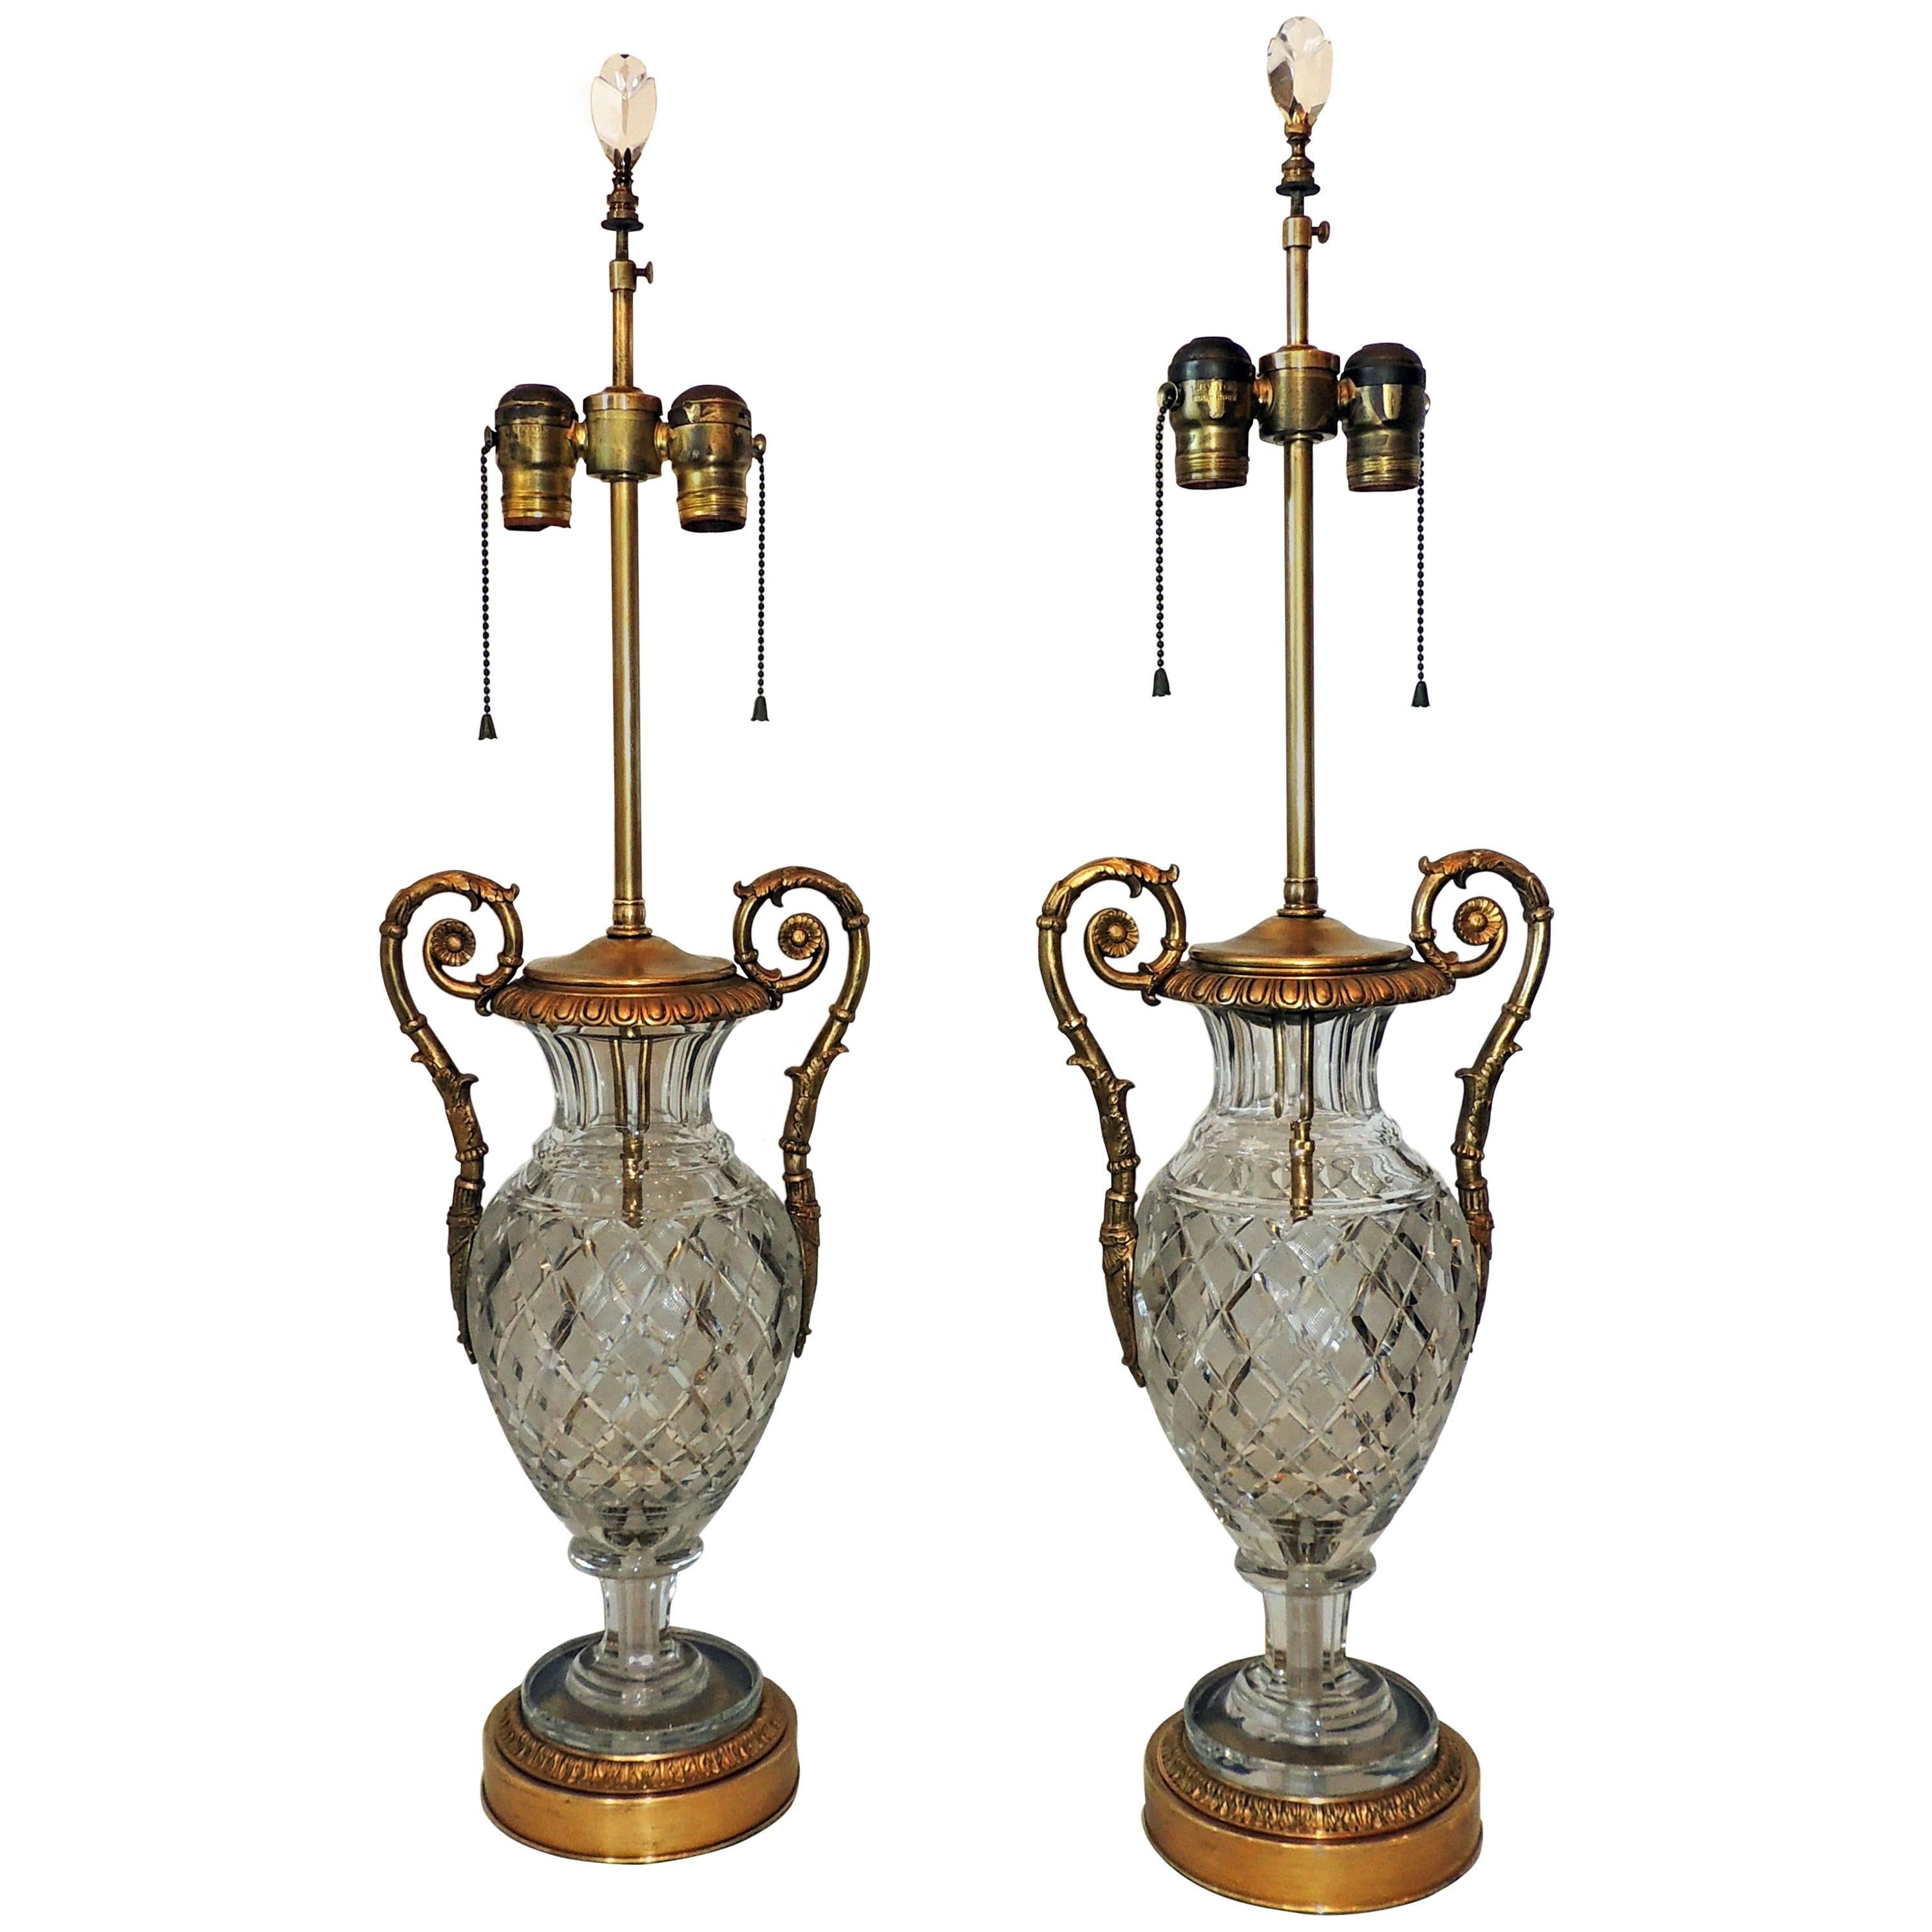 Magnifique paire de lampes néoclassiques en cristal taillé, doré et bronze monté sur bronze doré